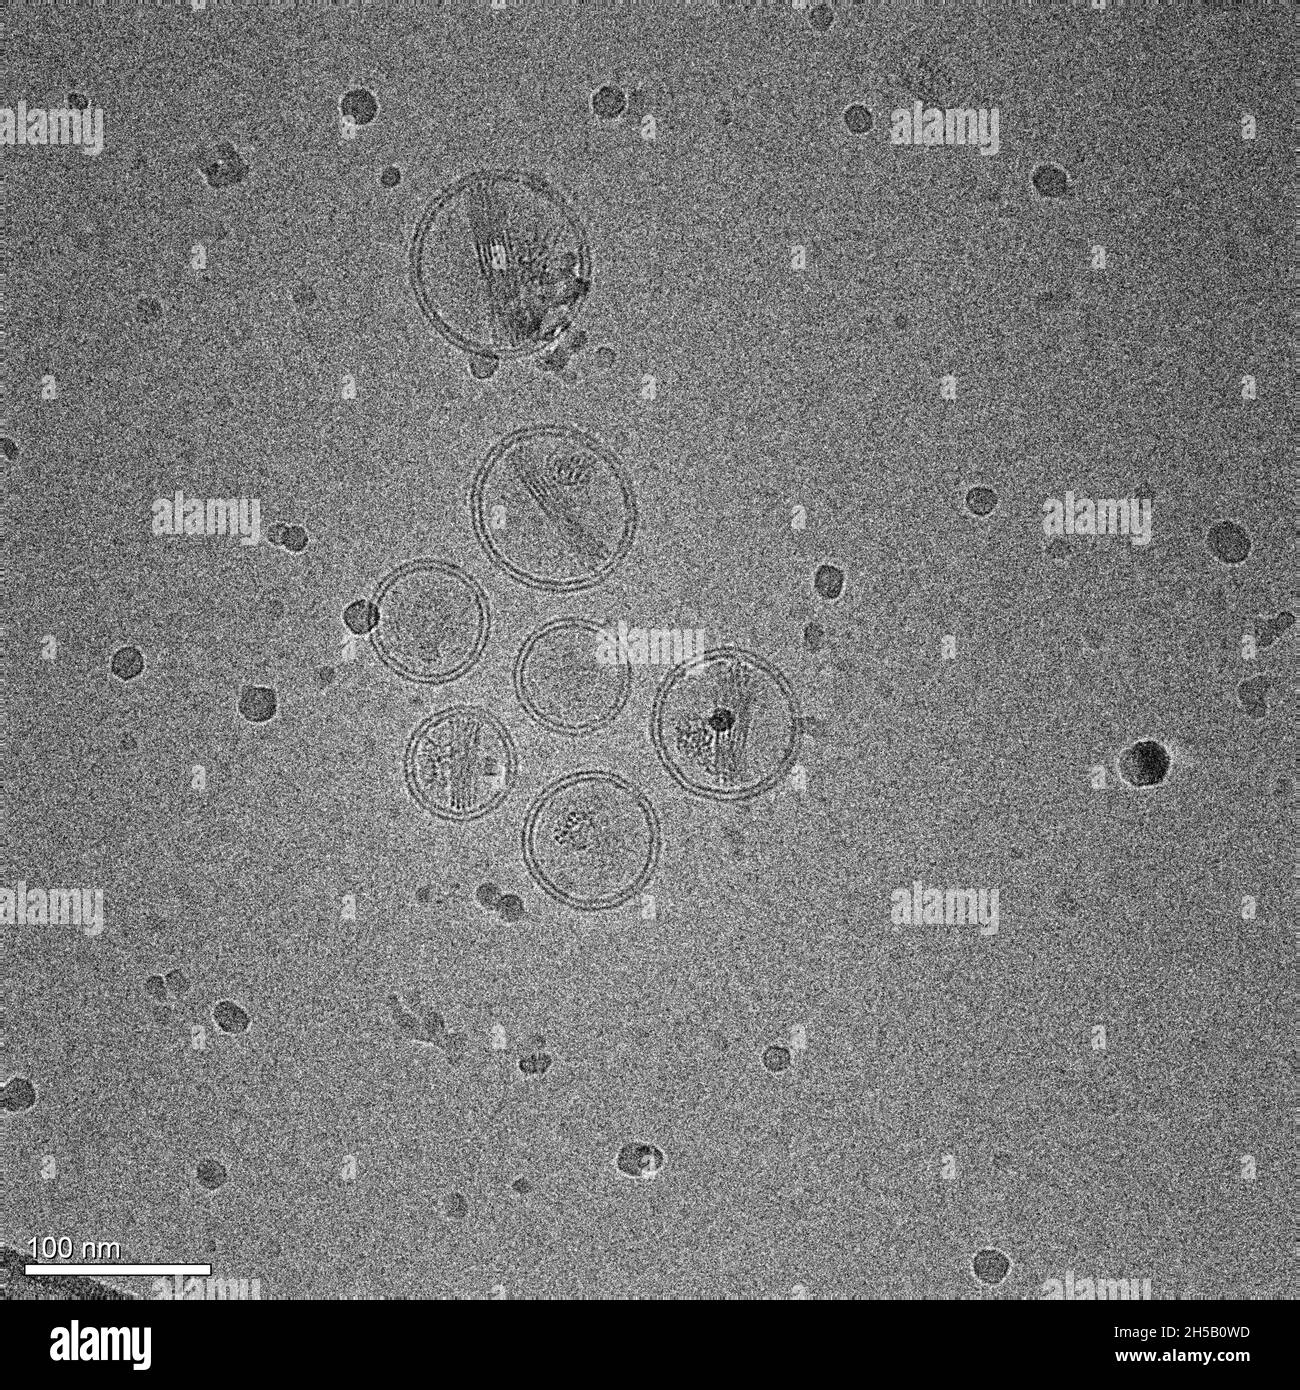 Micrografia di nanoparticelle di lipidi contenenti un farmaco antitumorale Foto Stock